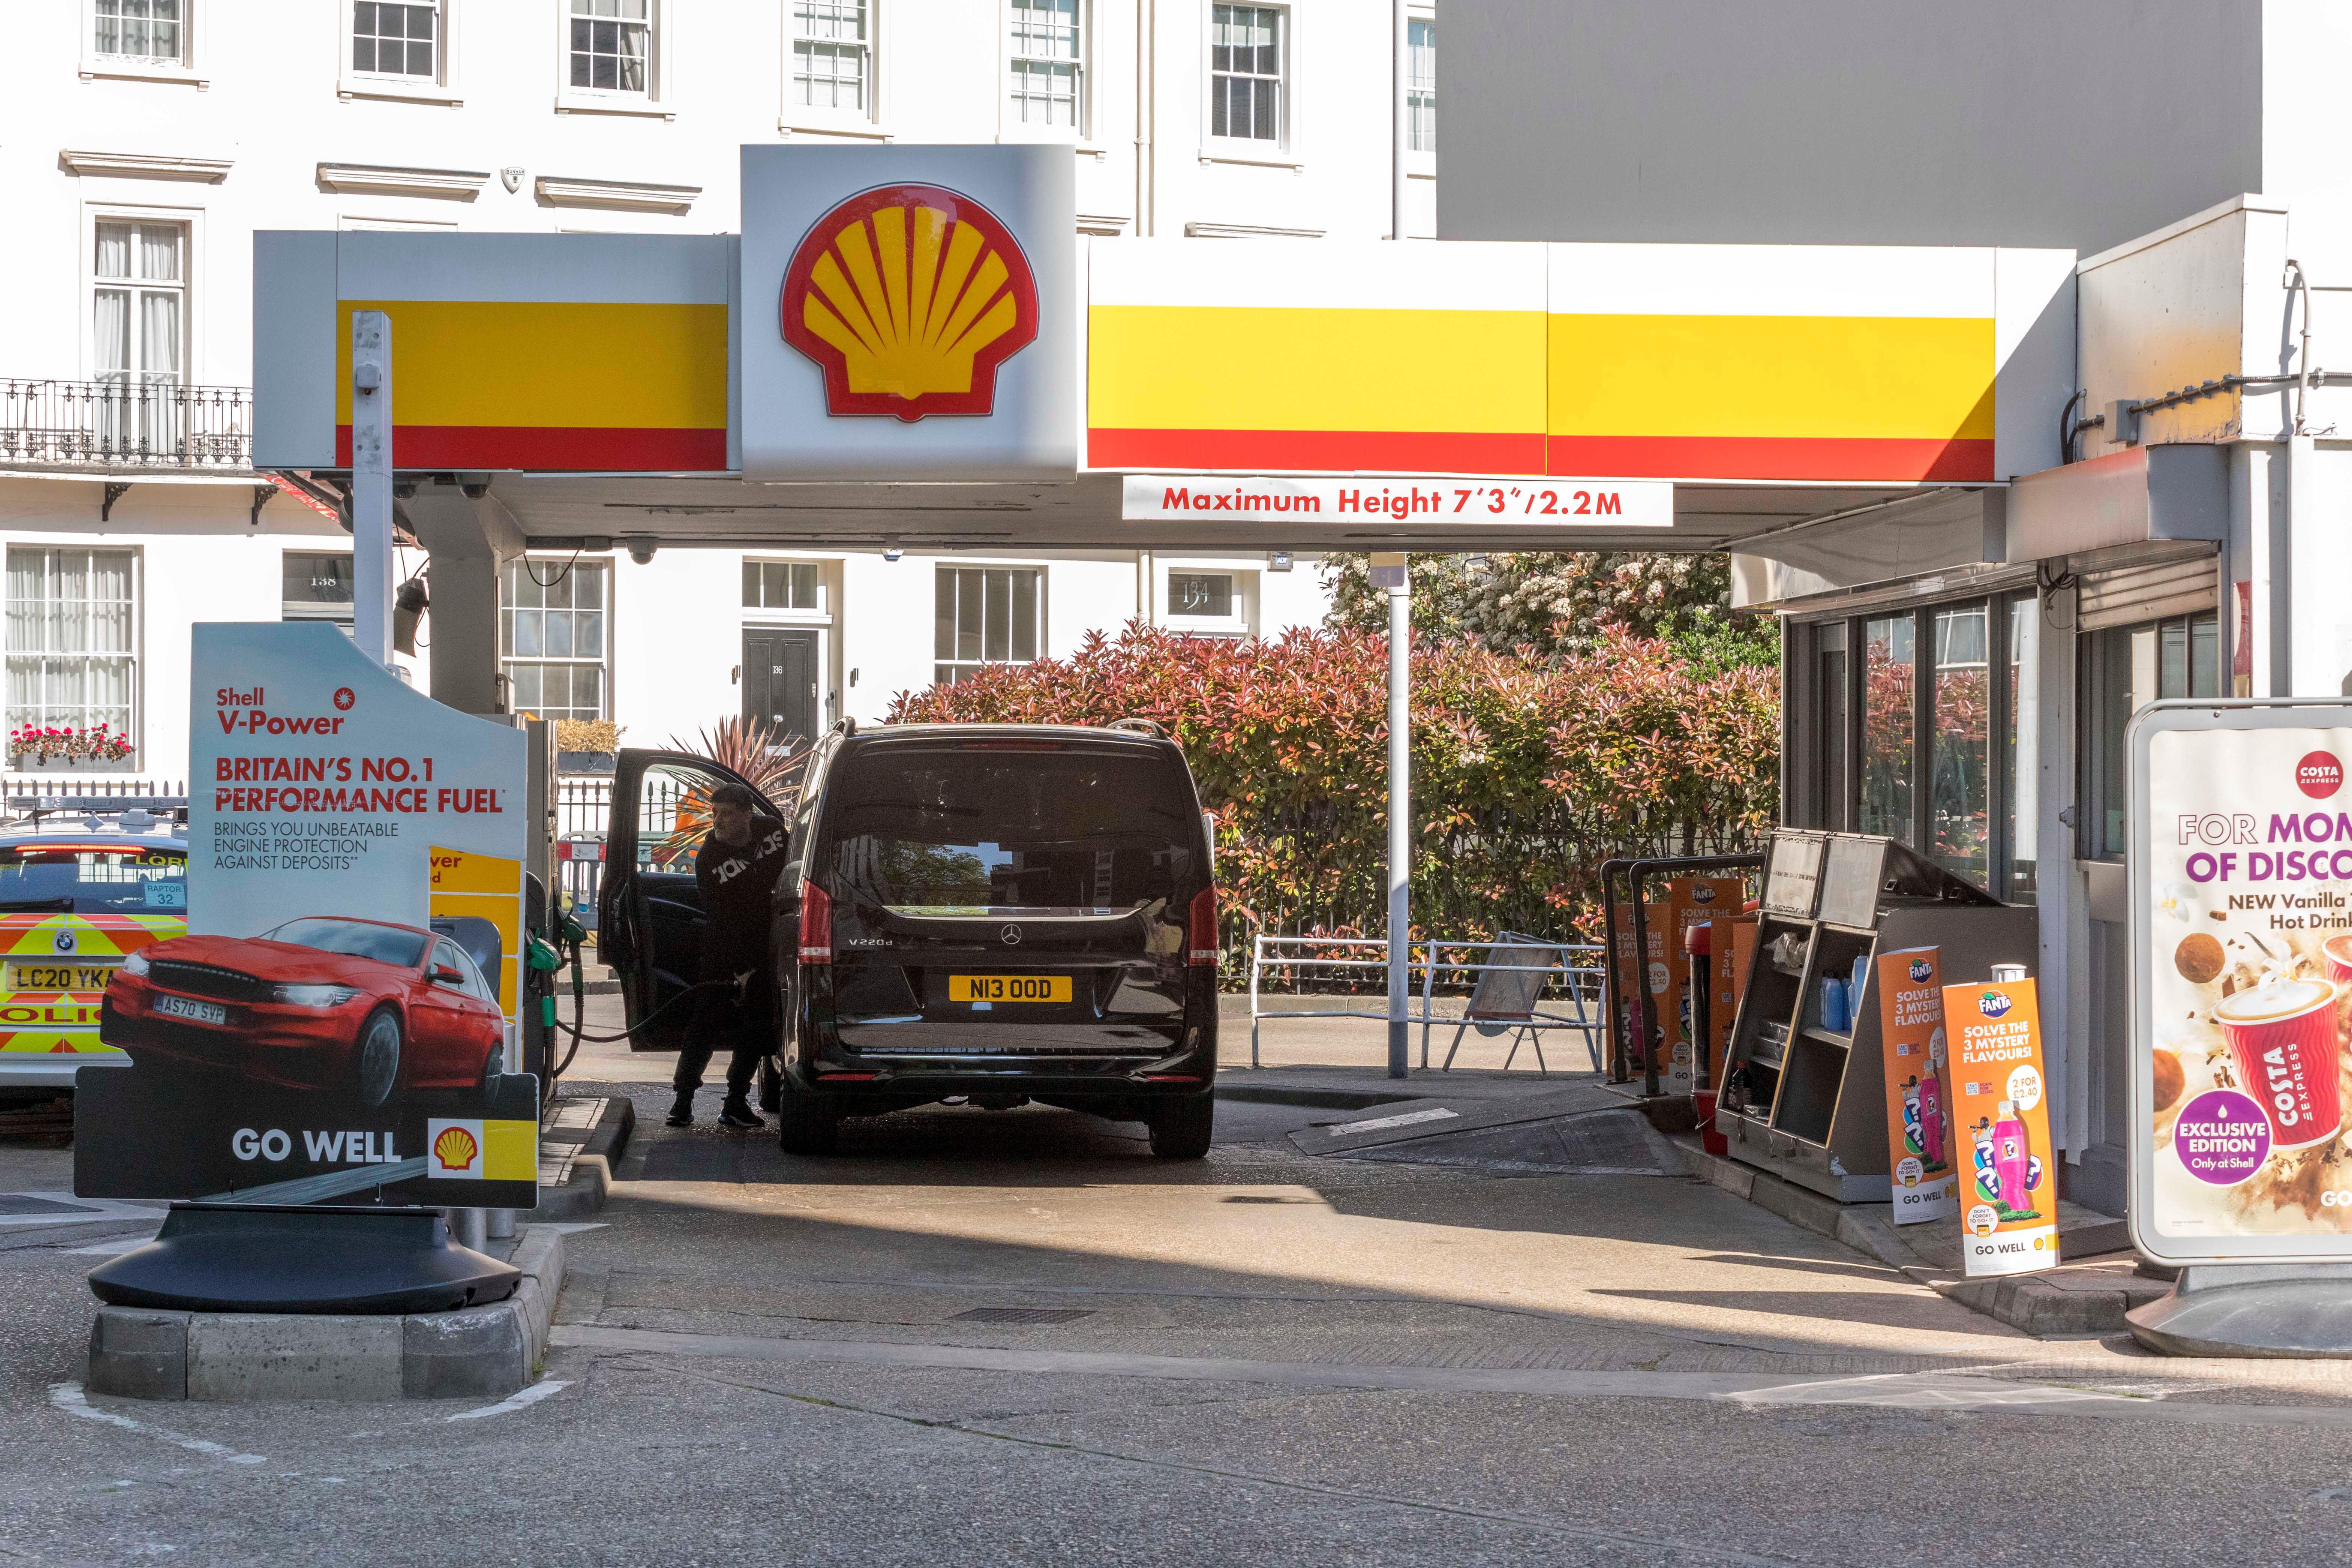 Während Shell am teuersten ist, verlangt es von Benzinverbrauchern 3 £ mehr als Morrisons